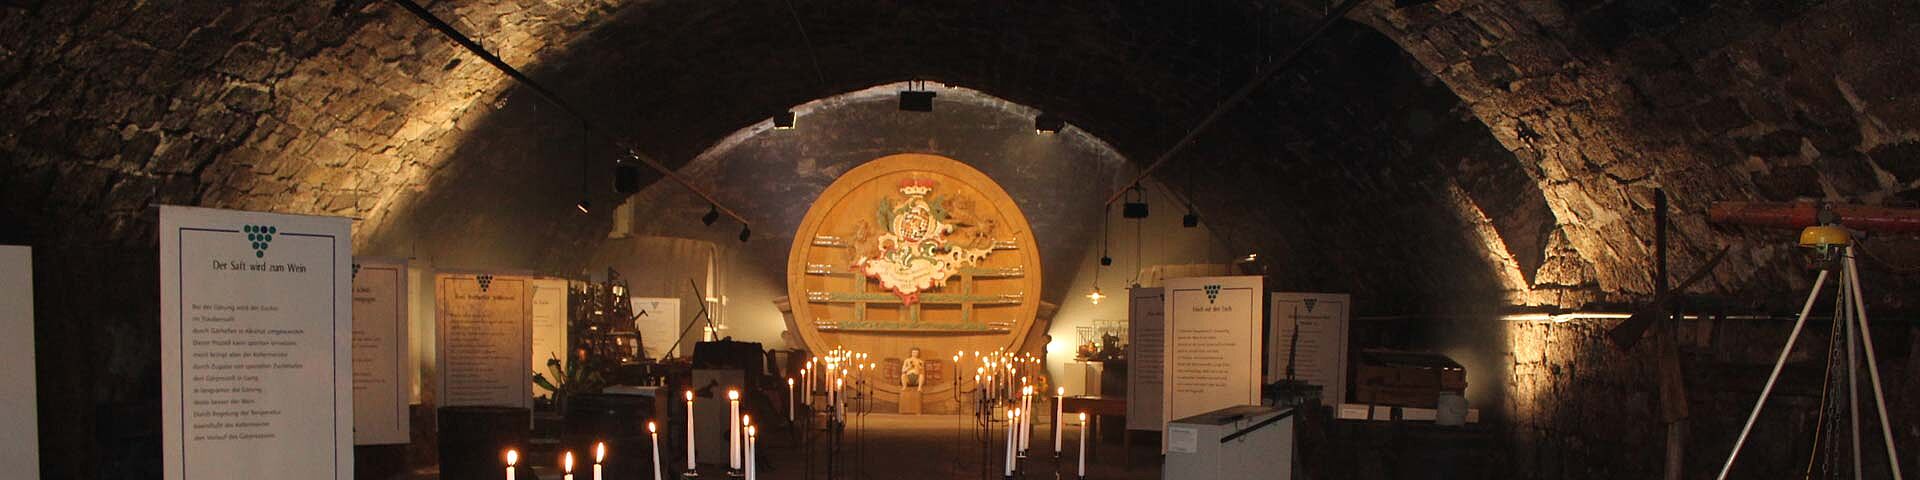 Das in Kerzenschein getauchte Weinbaumuseum mit großem Faß im Hintergrund ist zu sehen.